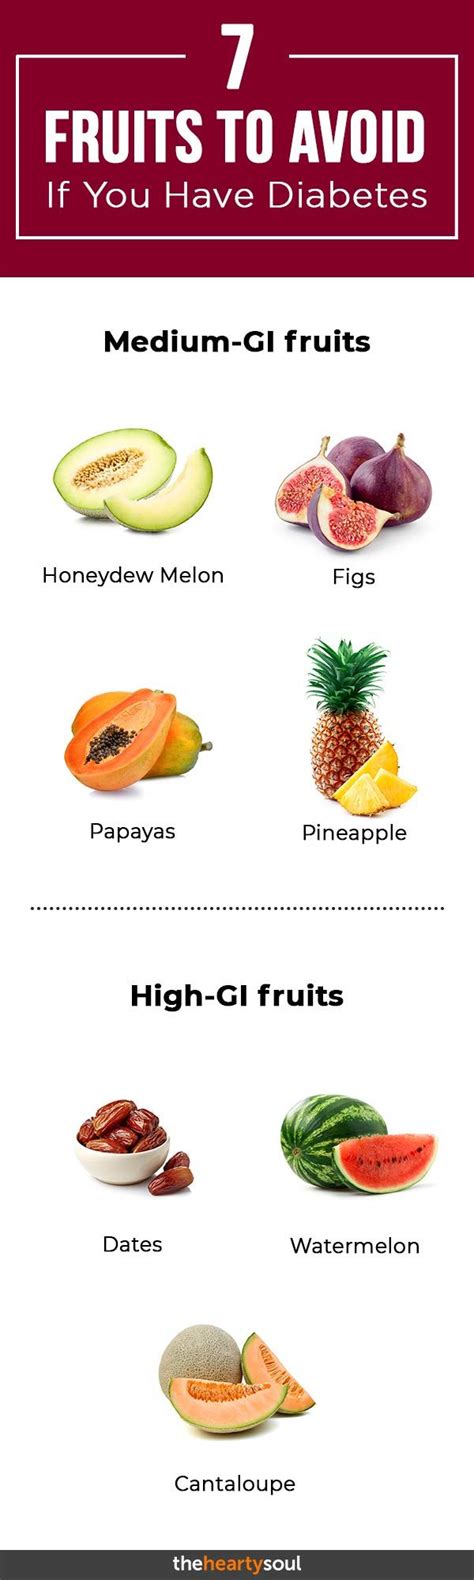 What 7 fruits should diabetics avoid?